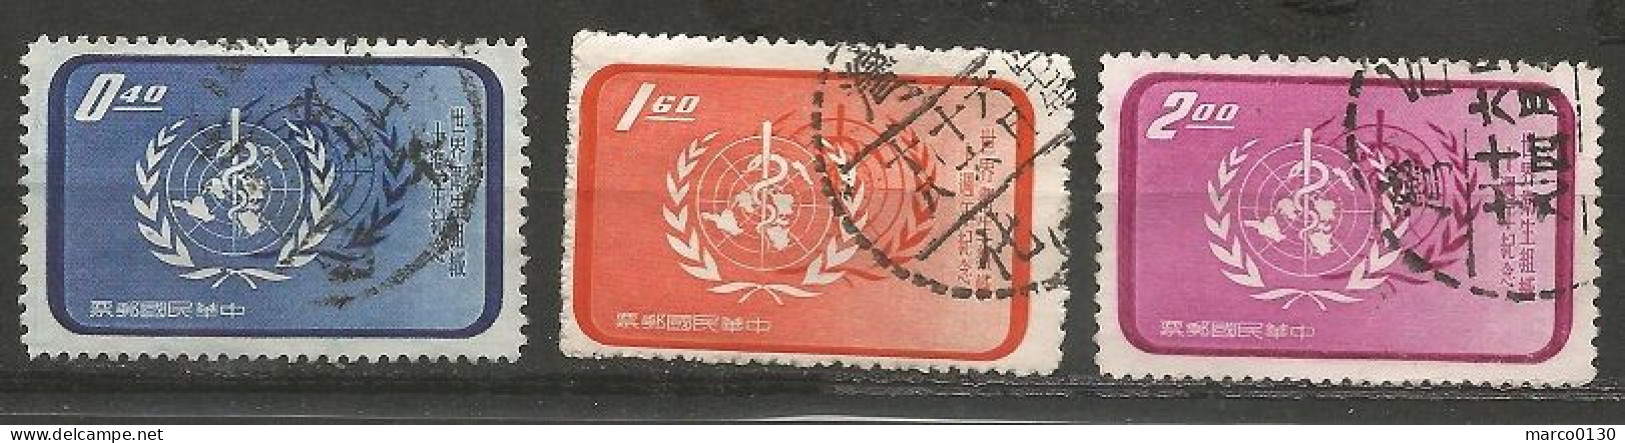 FORMOSE (TAIWAN) N° 259 + N° 260 + N° 261 OBLITERE - Used Stamps